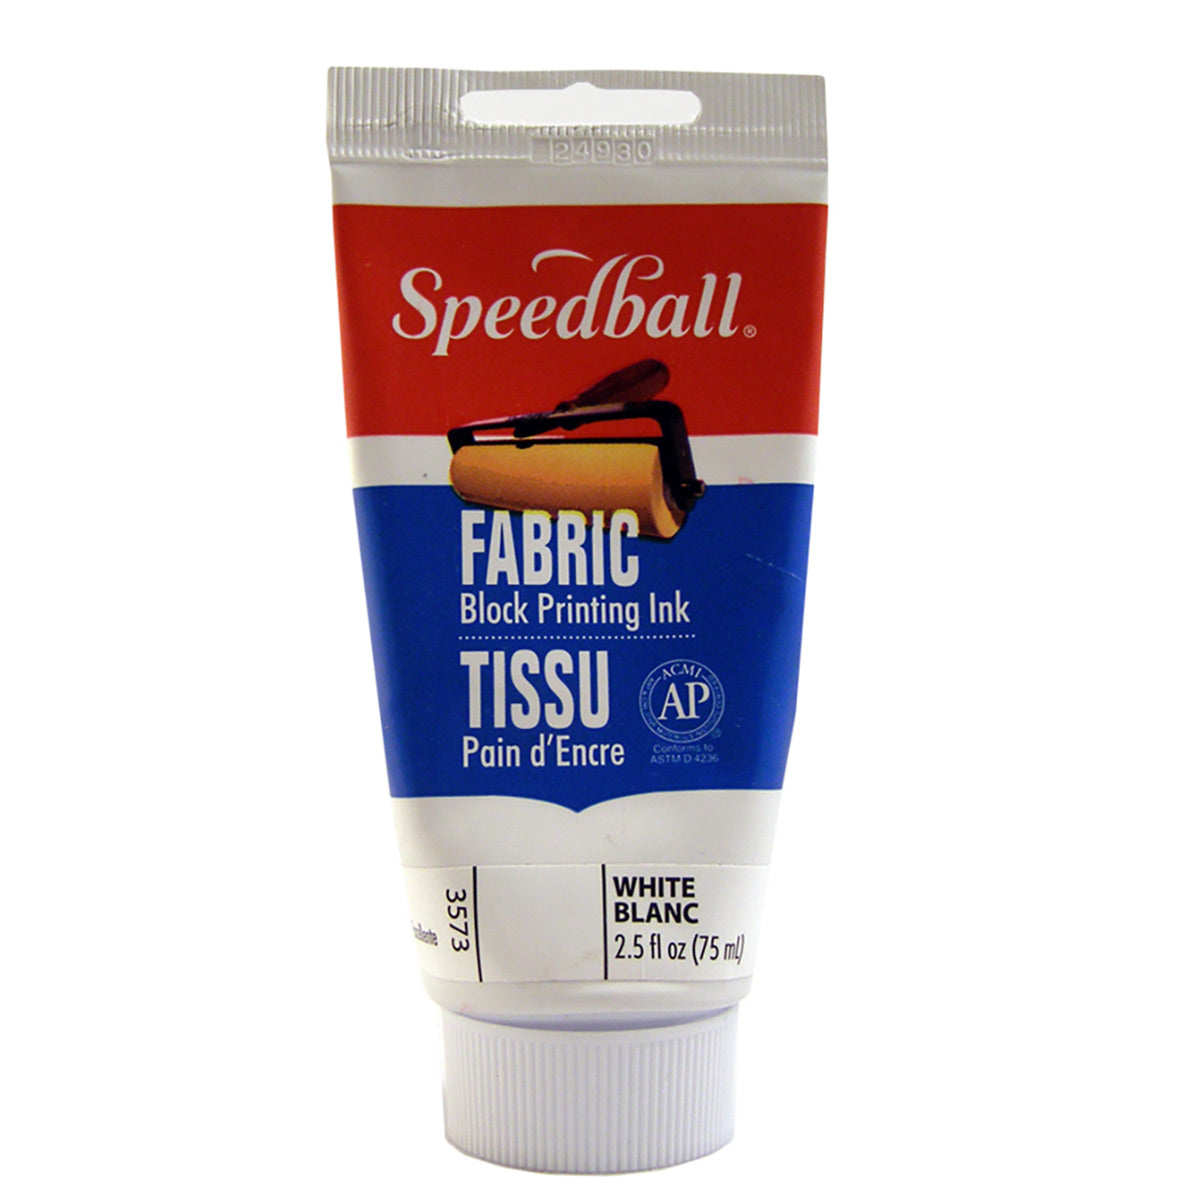 Speedball - Fabric Block Druckfarbe 75ml (2.5oz) - Weiß